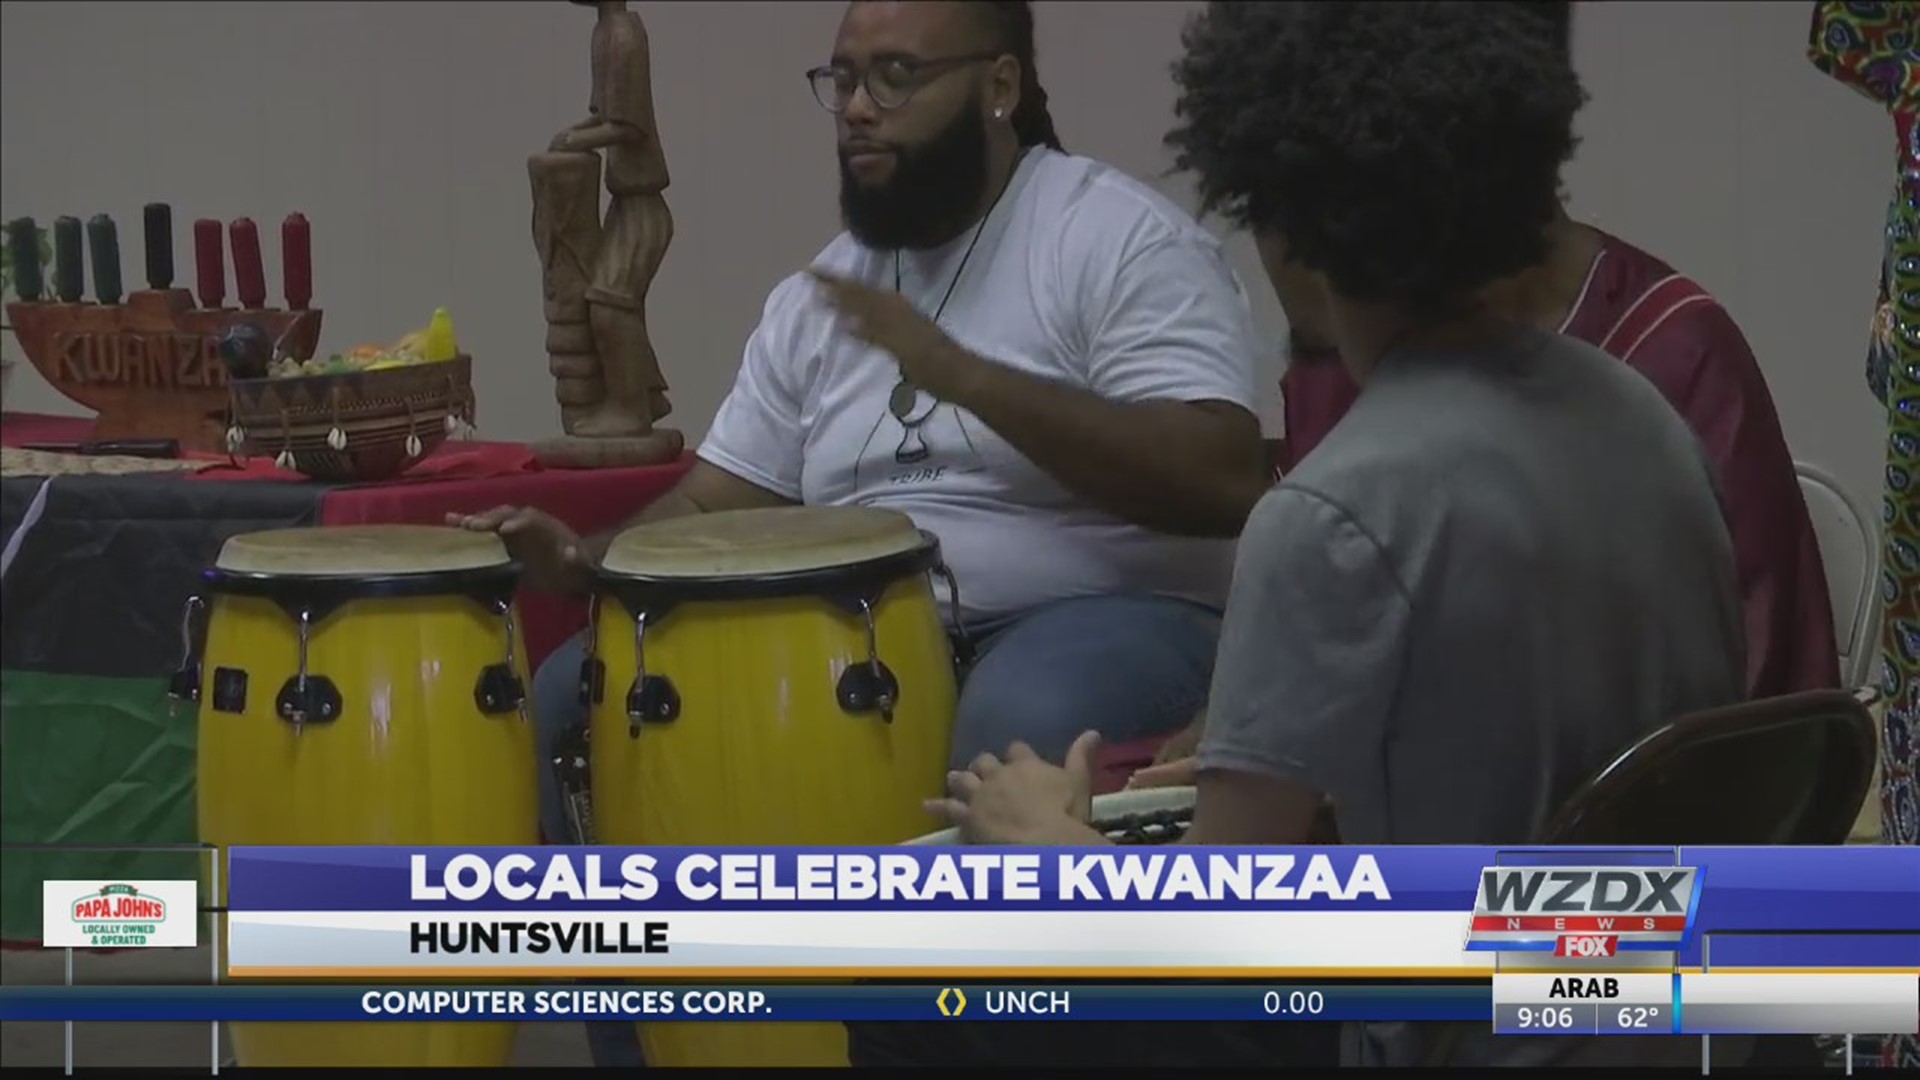 Locals celebrate Kwanzaa in Huntsville.